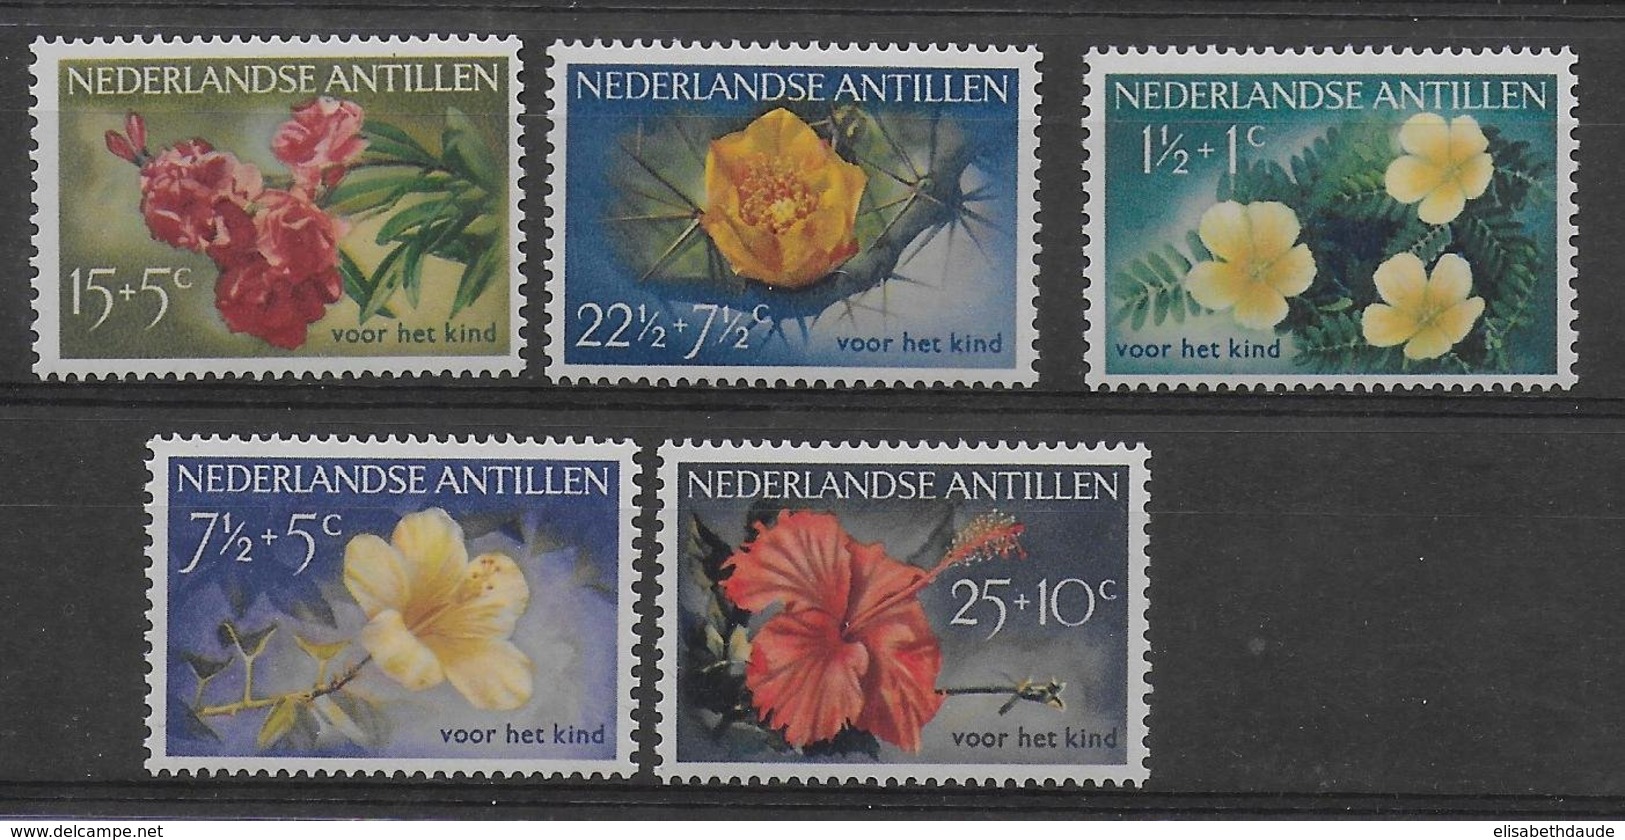 NEDERLANSE ANTILLEN - SERIE YVERT N° 1084/1087 * MLH - COTE = 22.5 EUR. - FLORE - Curazao, Antillas Holandesas, Aruba